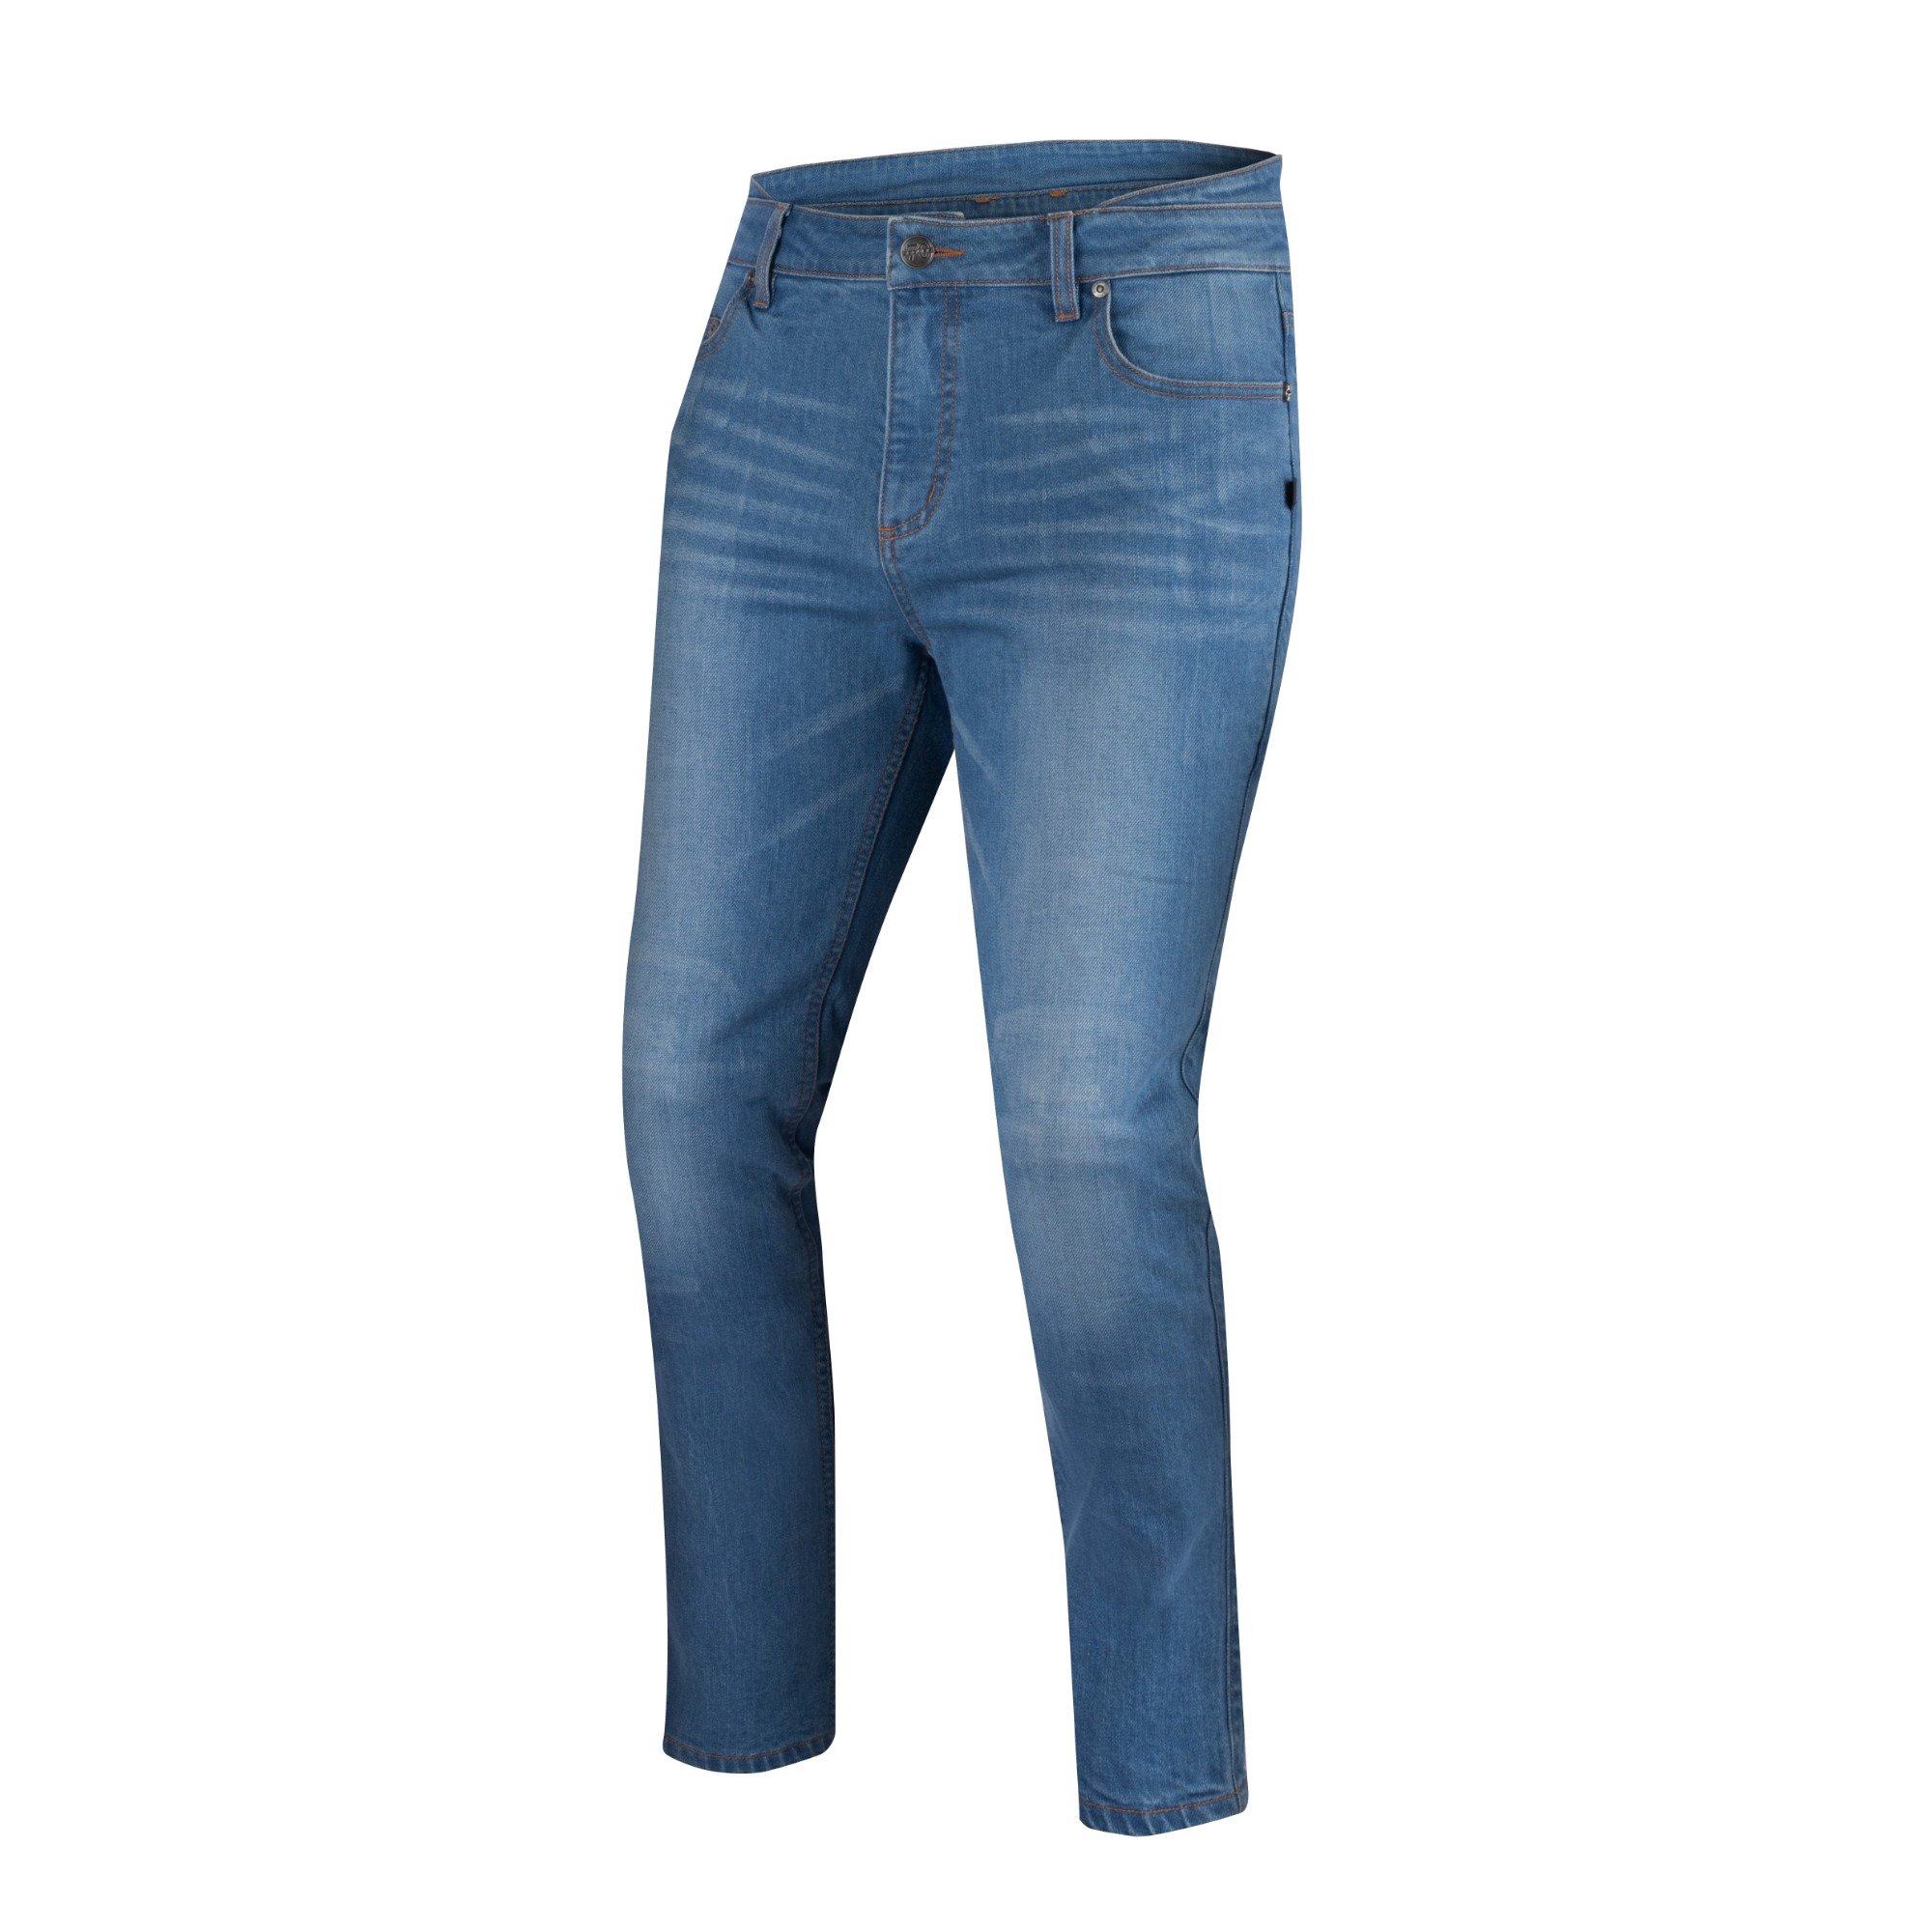 Image of Segura Trousers Rosco Blue Talla 4XL